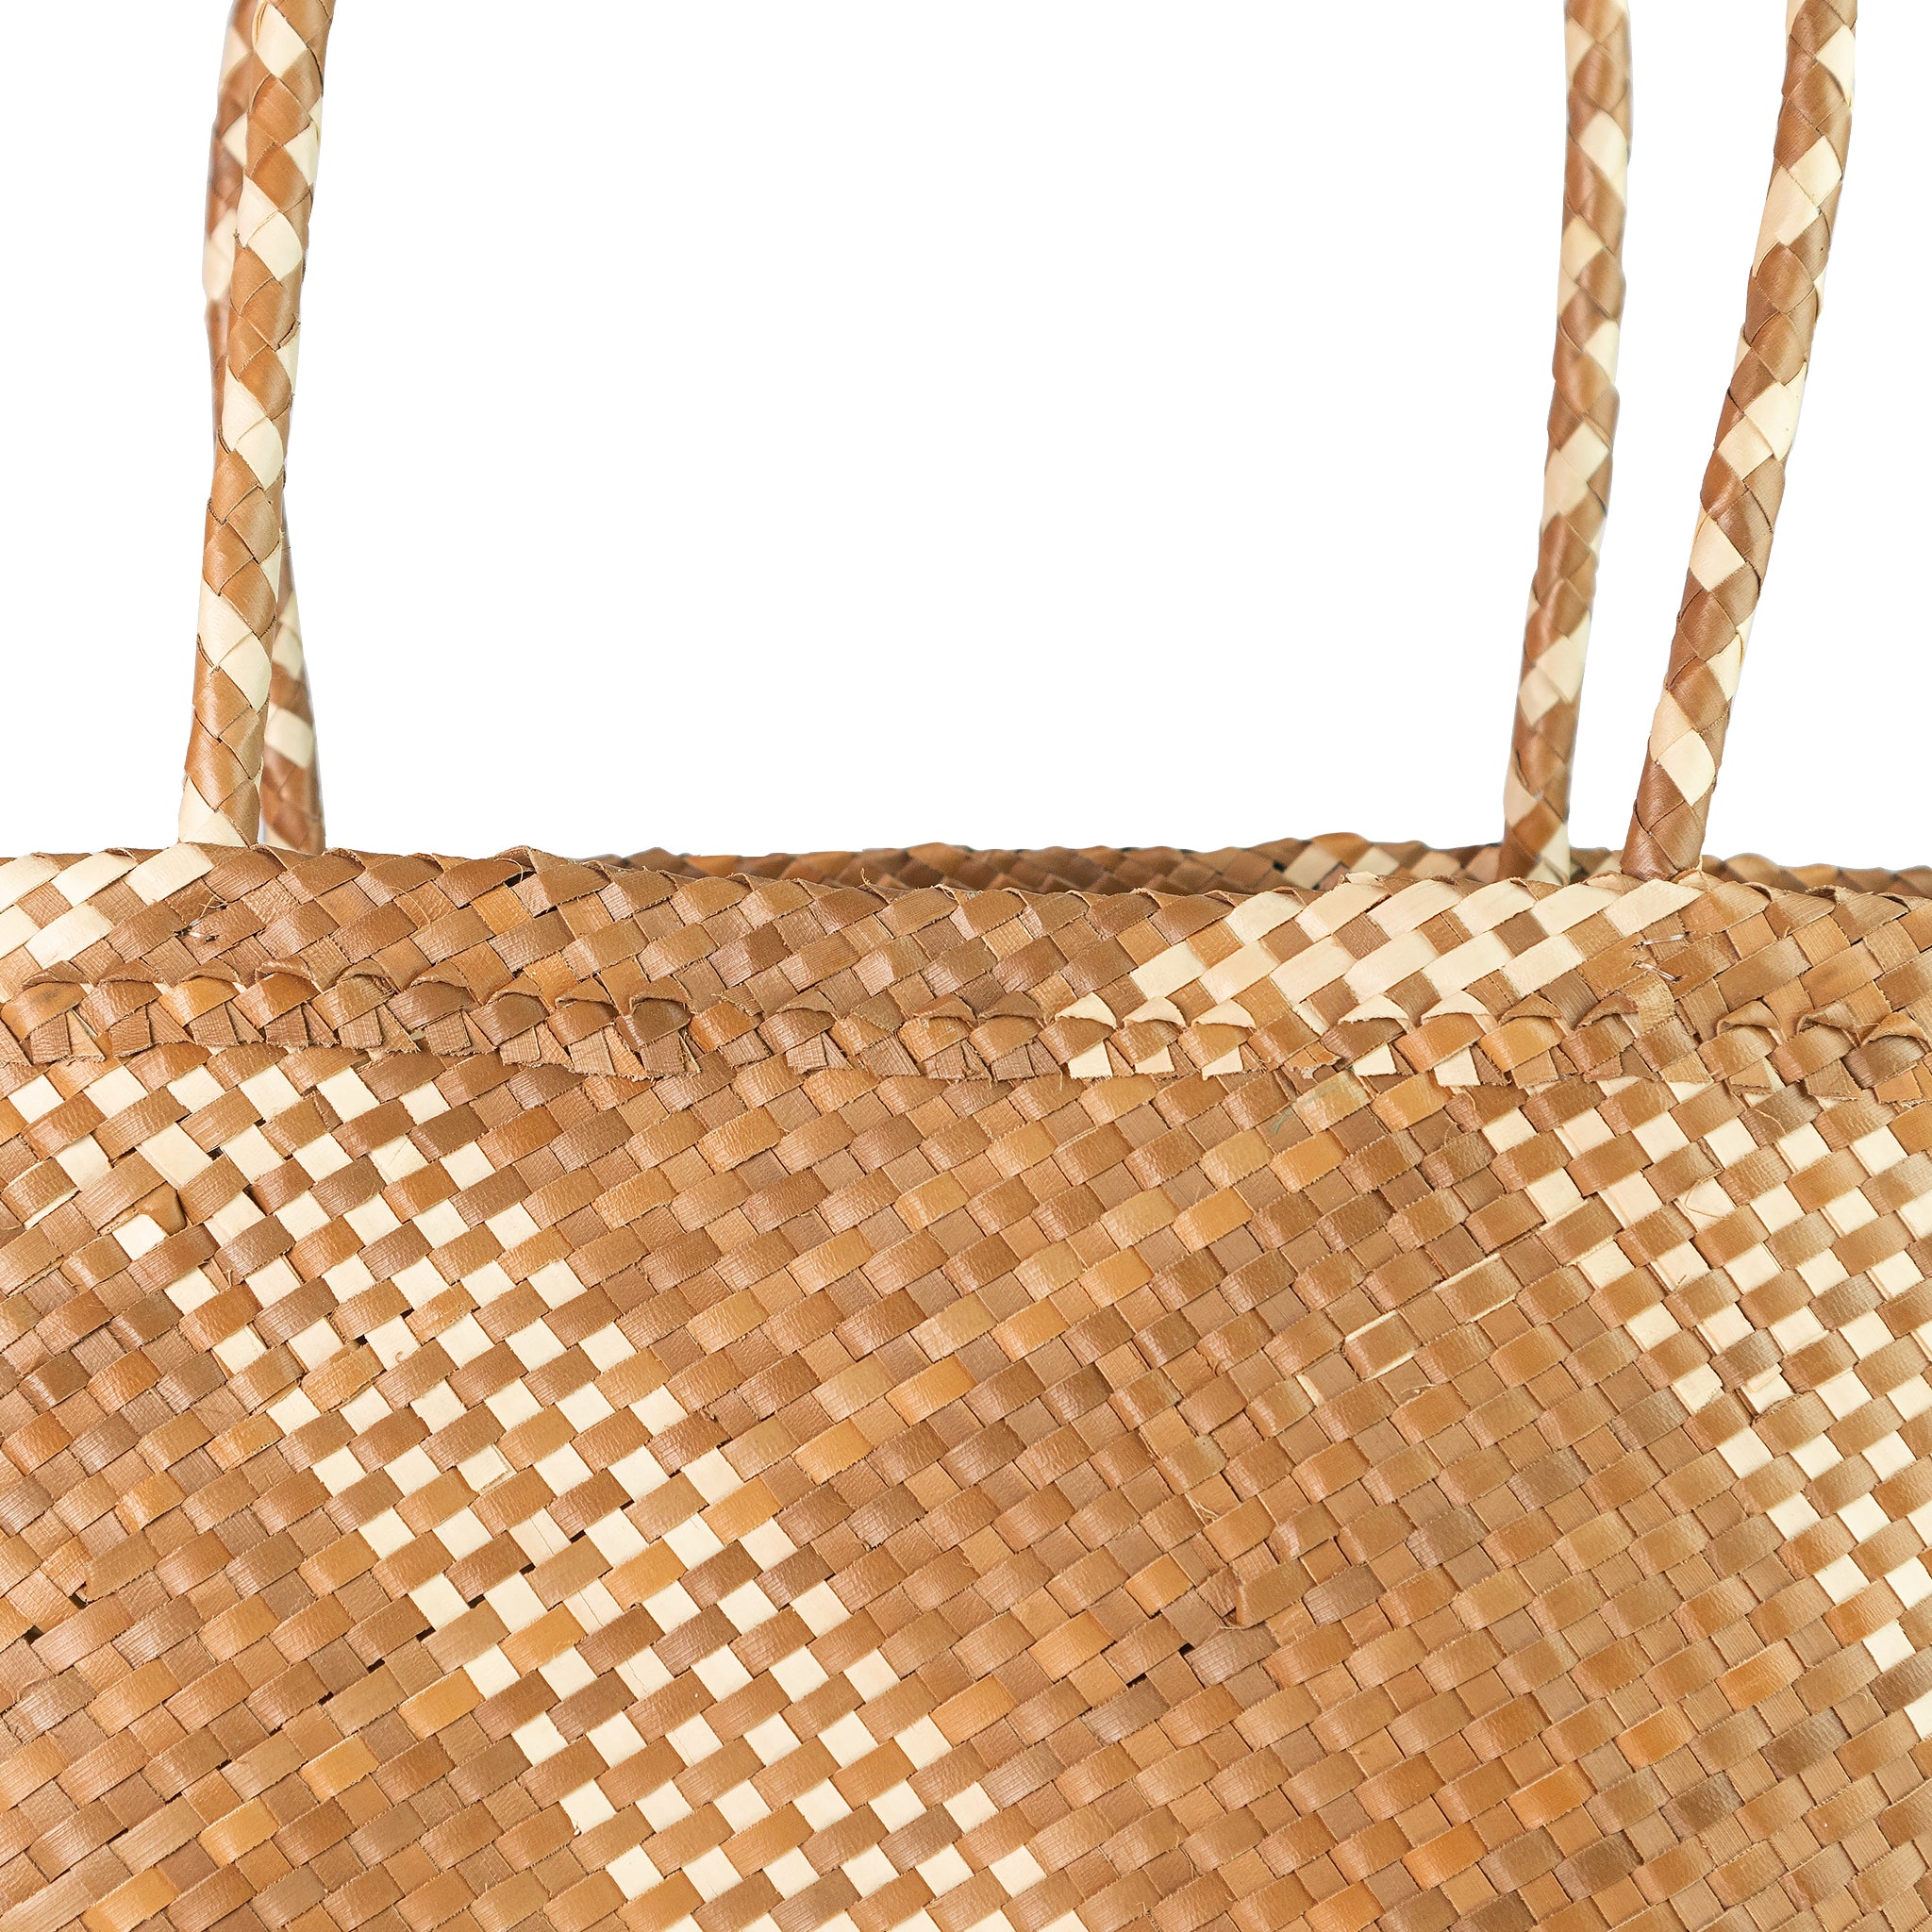 Detail view tan tote shopper basket bag